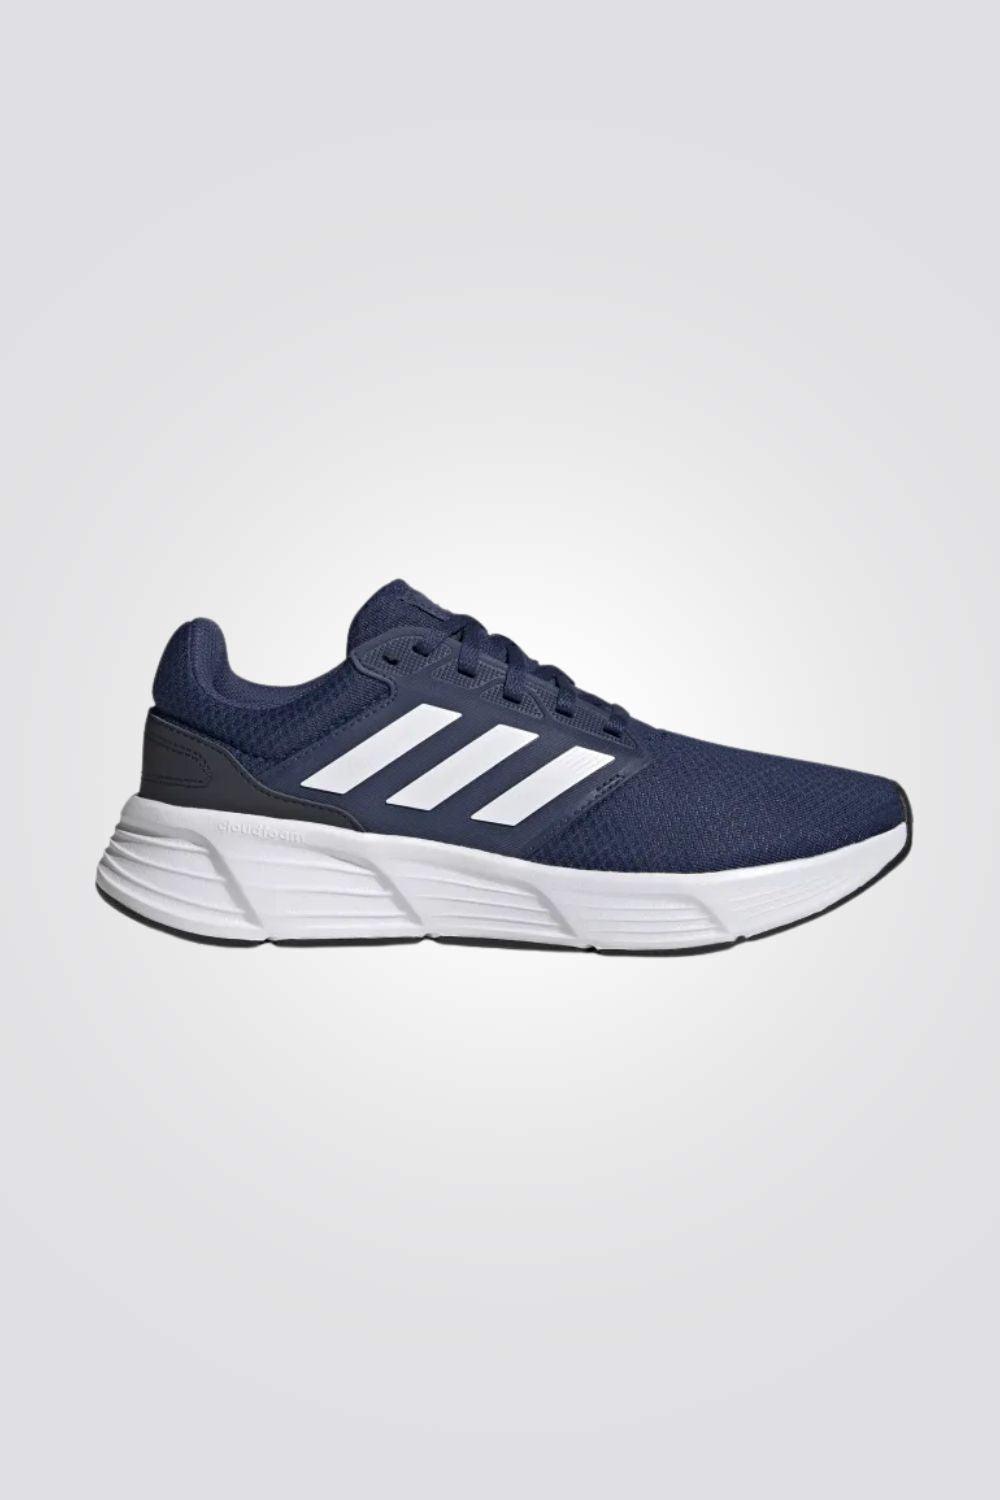 נעלי ספורט לגבר GALAXY 6 בצבע כחול - MASHBIR//365